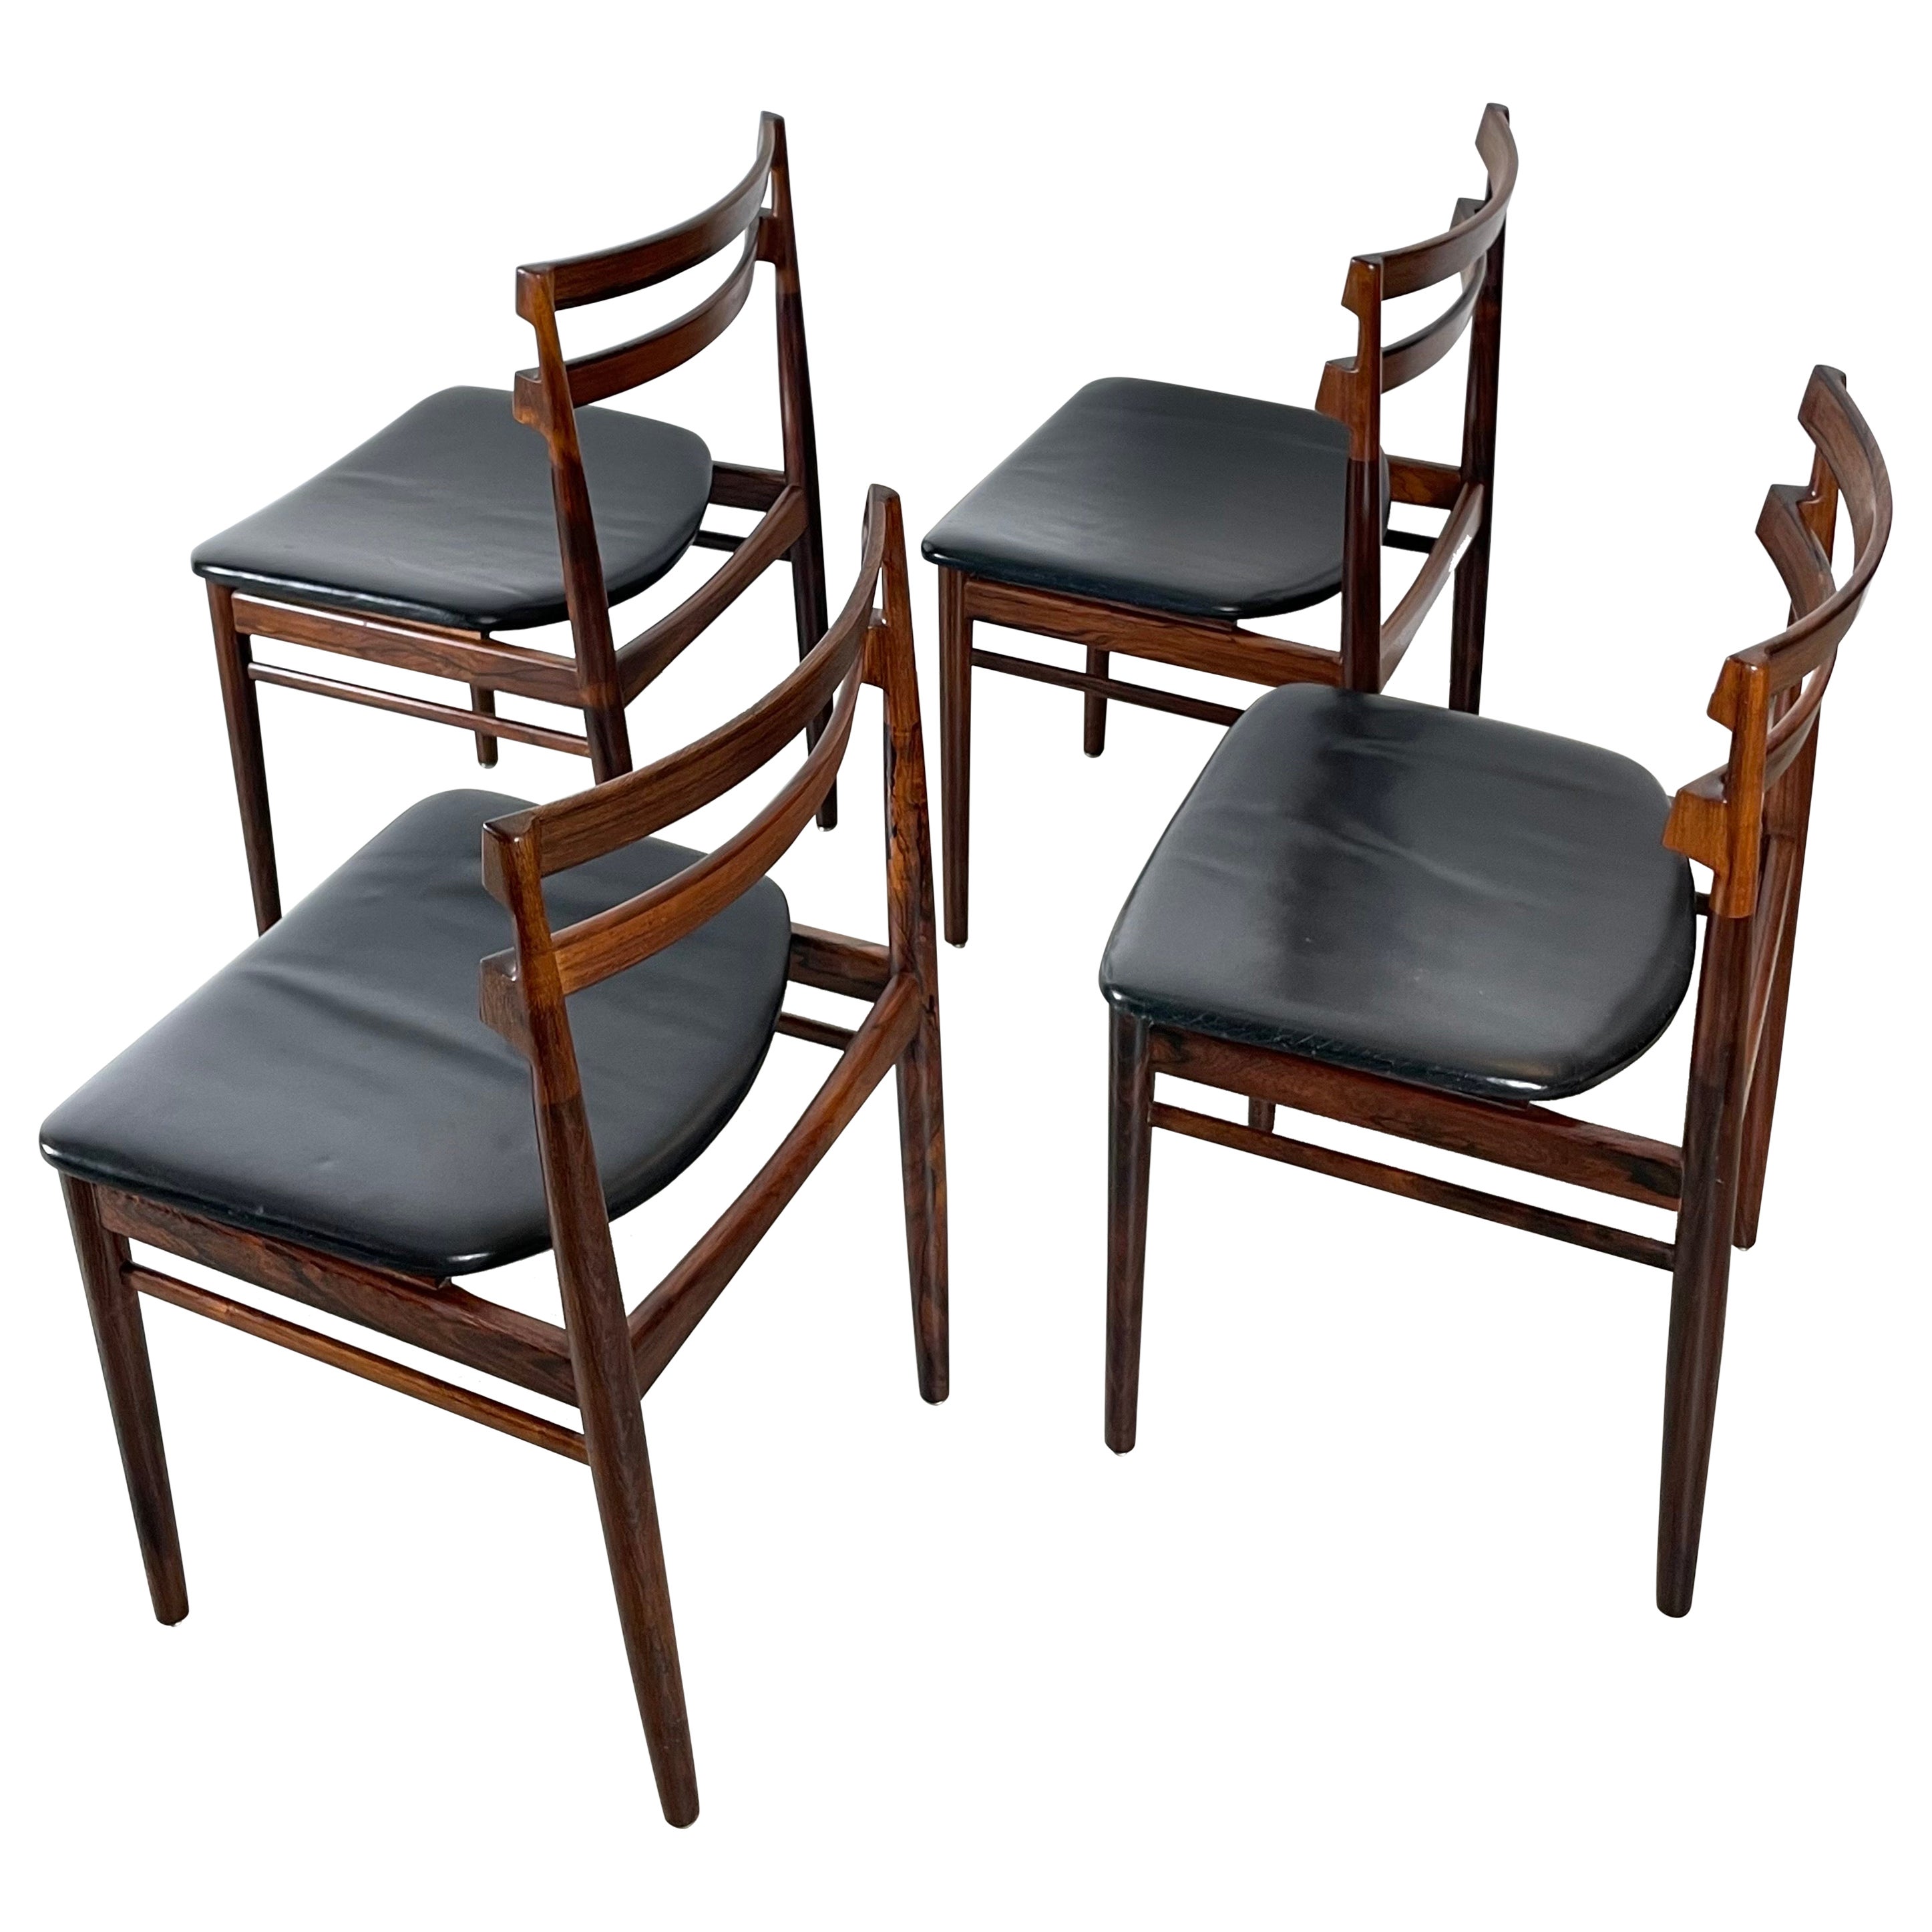 Palisander Dining Chairs by Henry Rosengren for Brande Møbelfabrik 1950s Denmark